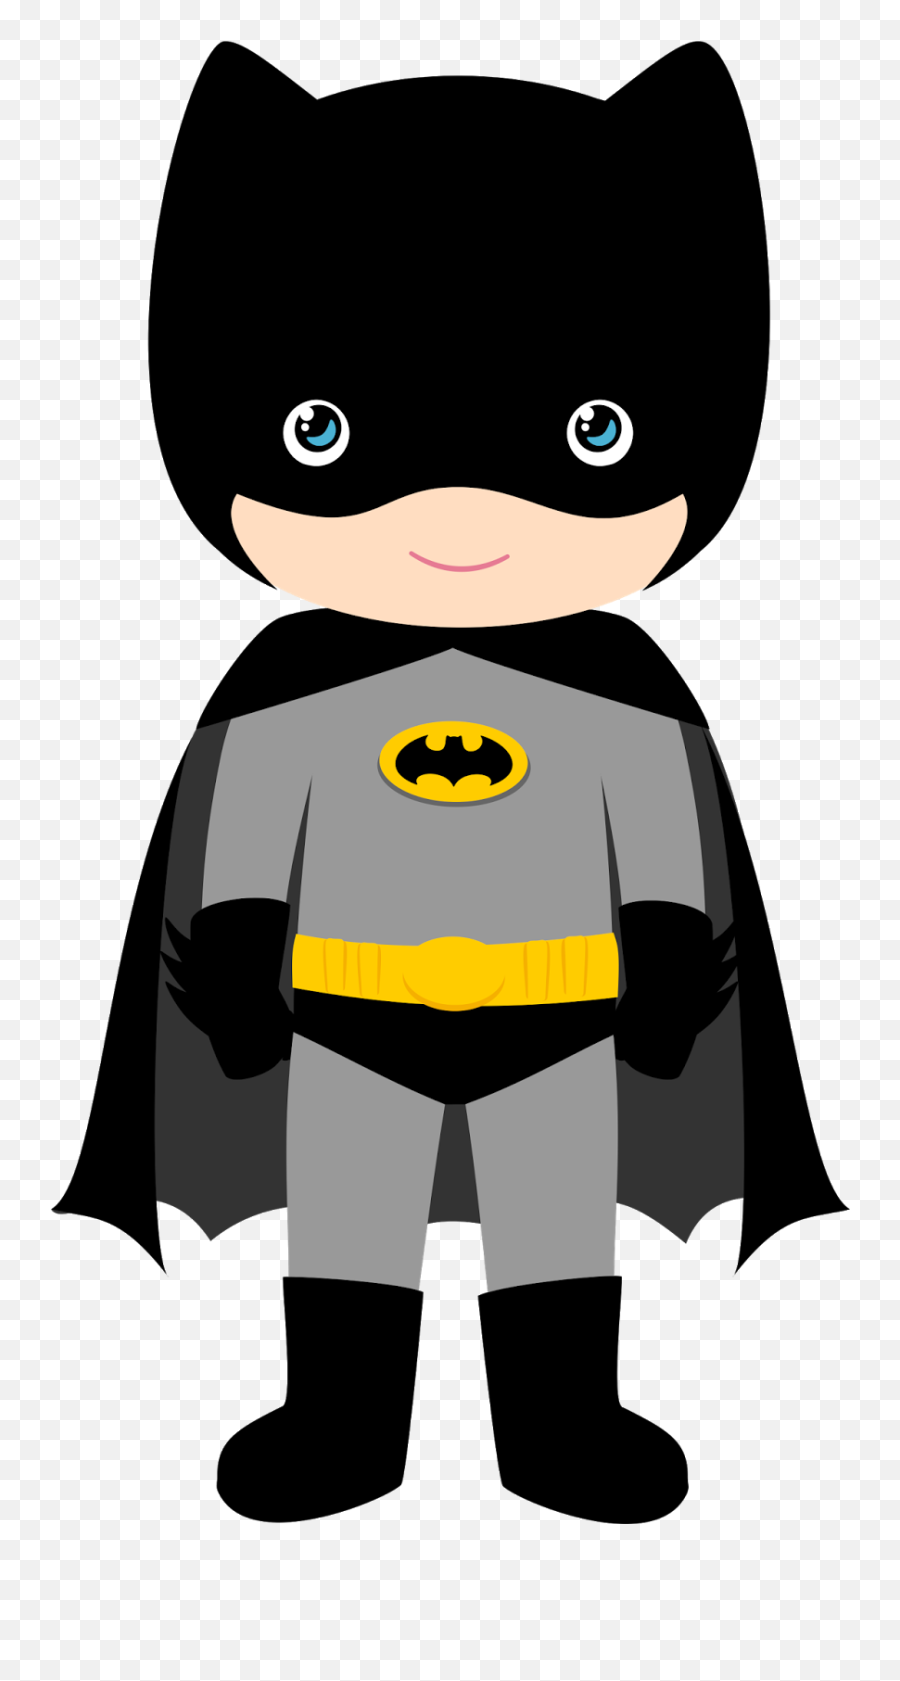 Batman Clipart Superhero Batman Superhero Transparent Free - Batman Clipart Emoji,Batman Emoji